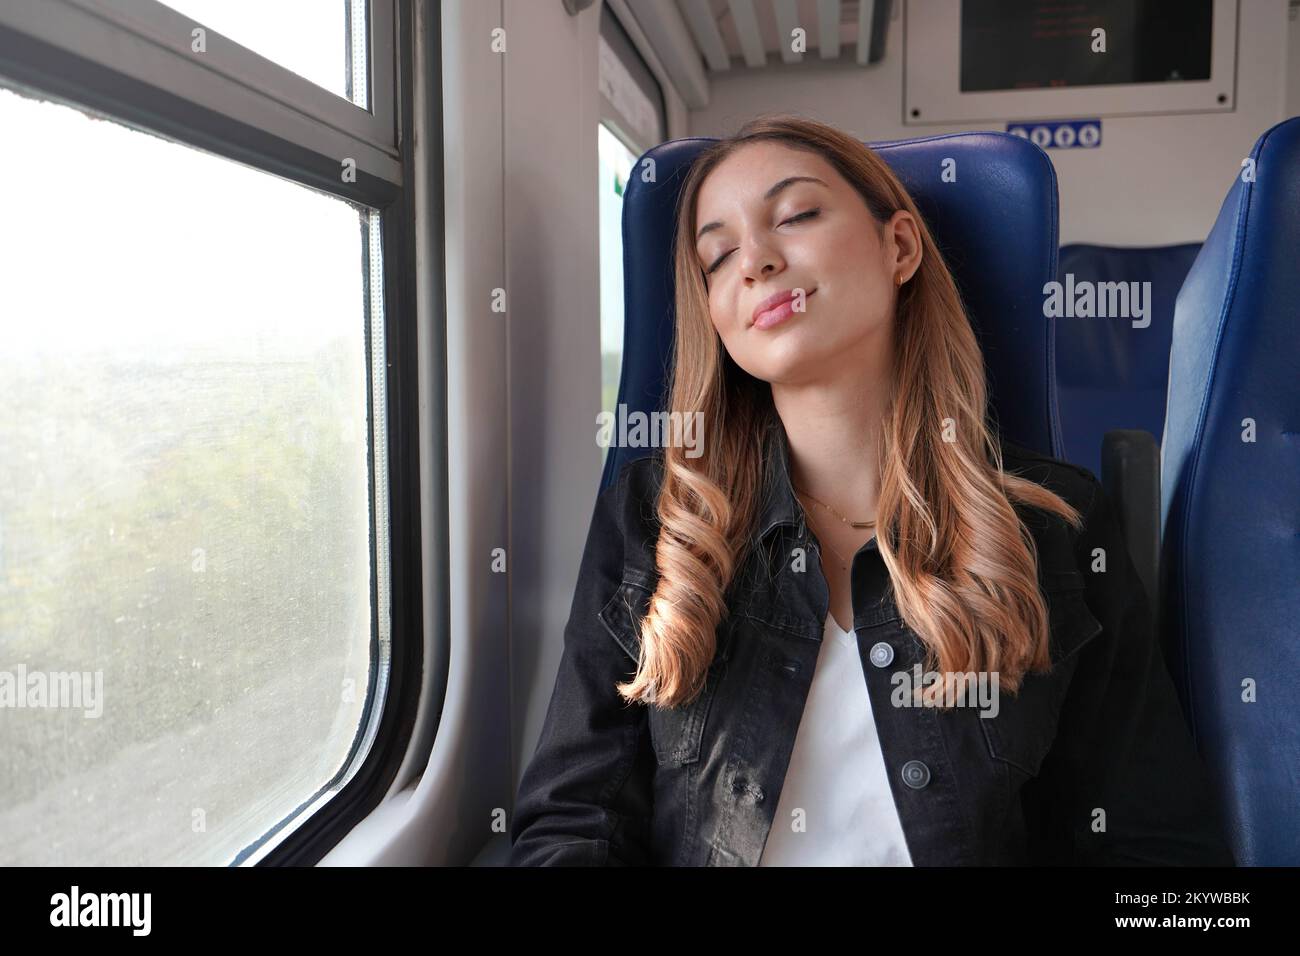 Beautiful woman sleeping sitting on public transport on autumn season Stock Photo